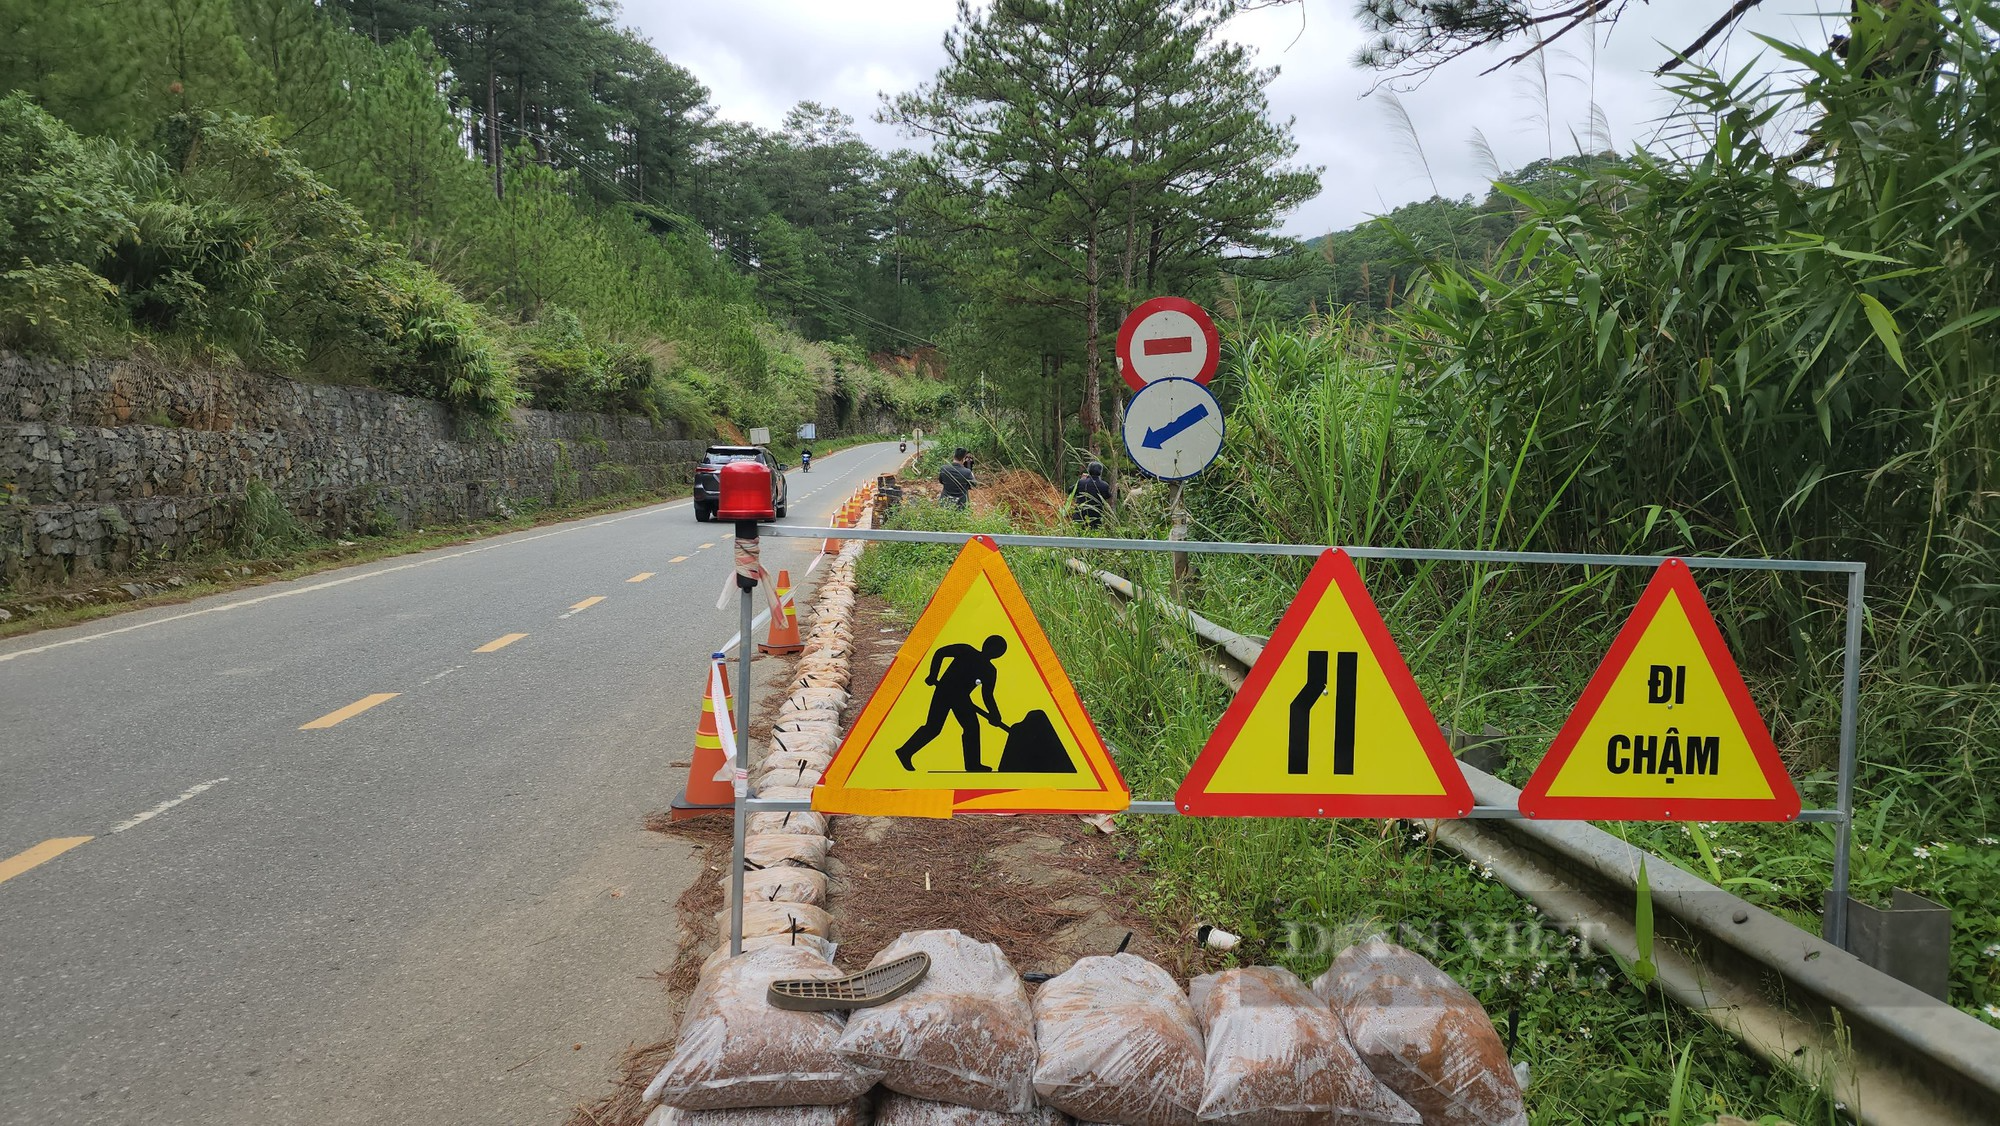 Quốc lộ 27C nối Nha Trang - Lâm Đồng bị sạt lở nghiêm trọng tại nhiều điểm - Ảnh 8.